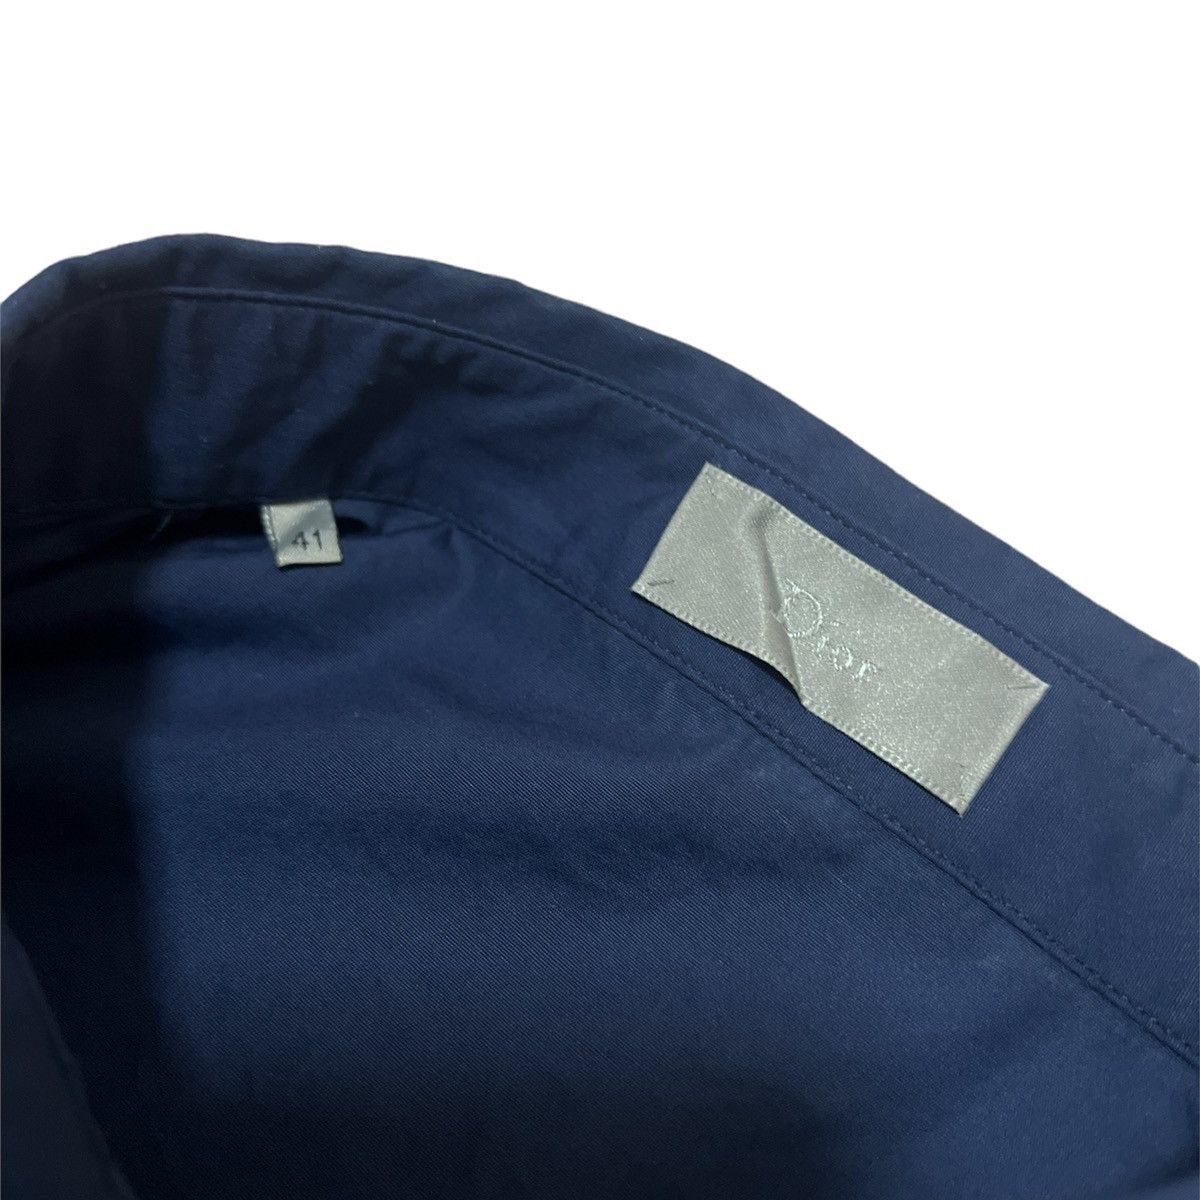 SS14 Dior Homme Kris Van Assche Haute Patchwork Shirt - 5